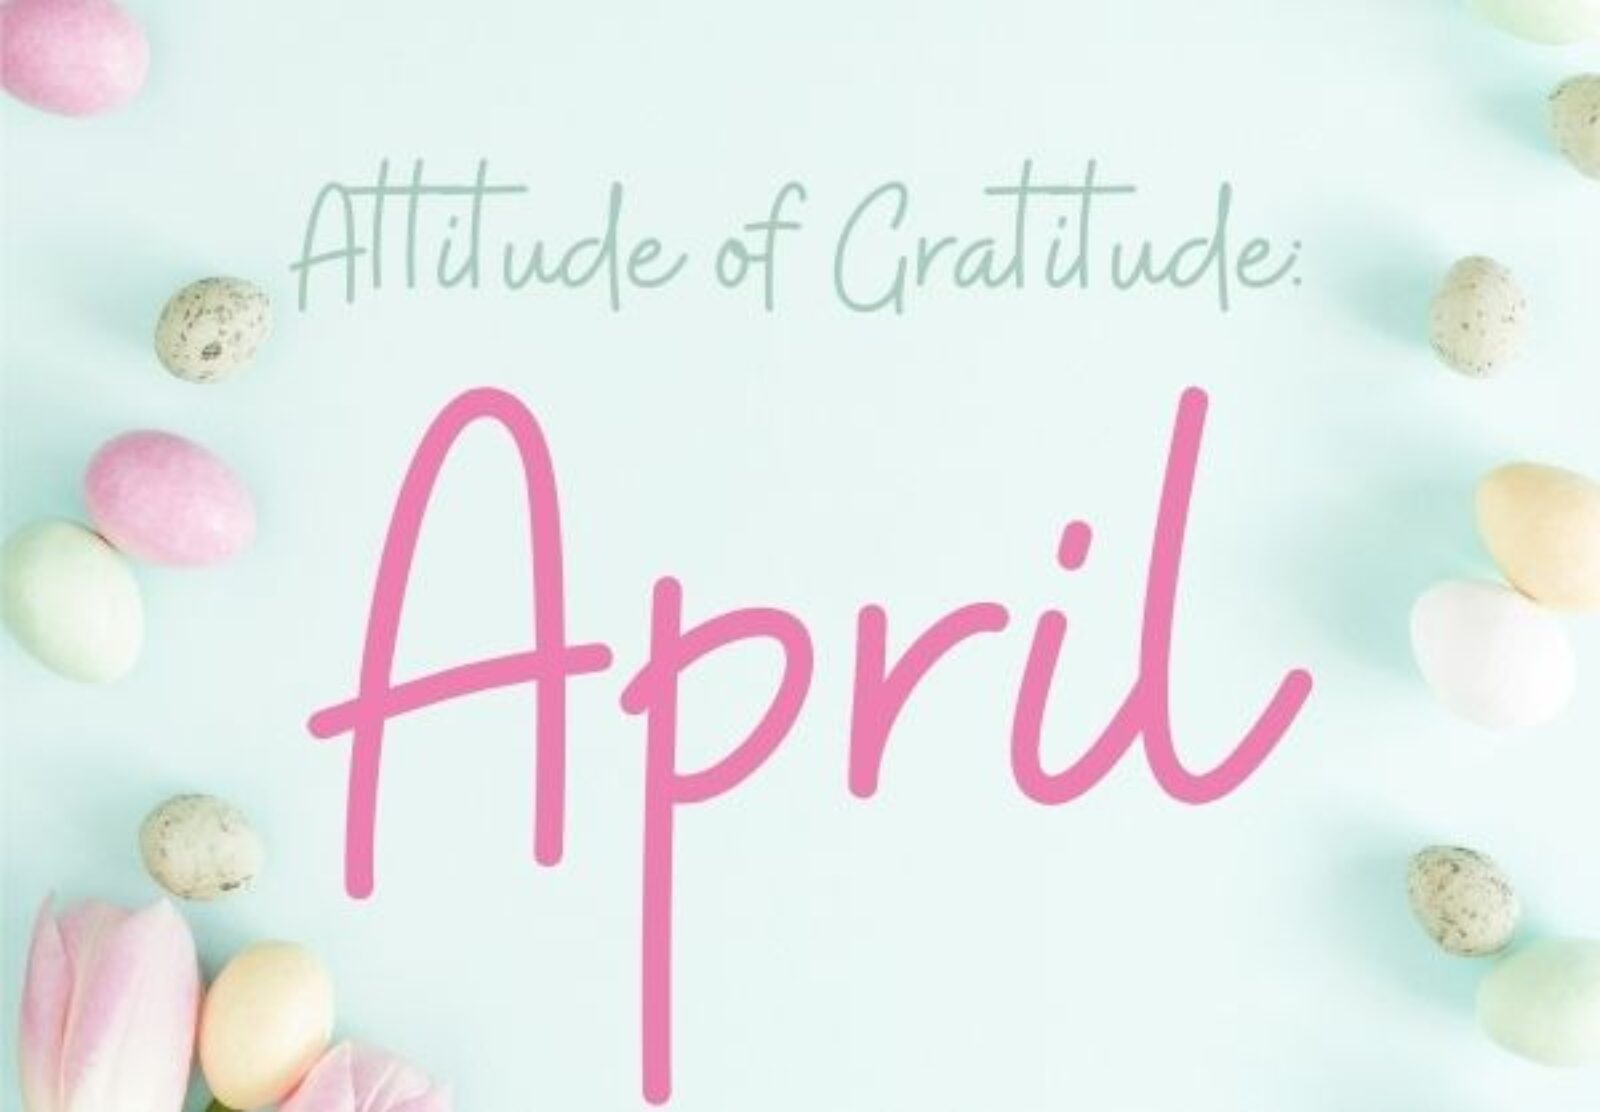 Attitude of Gratitude: April